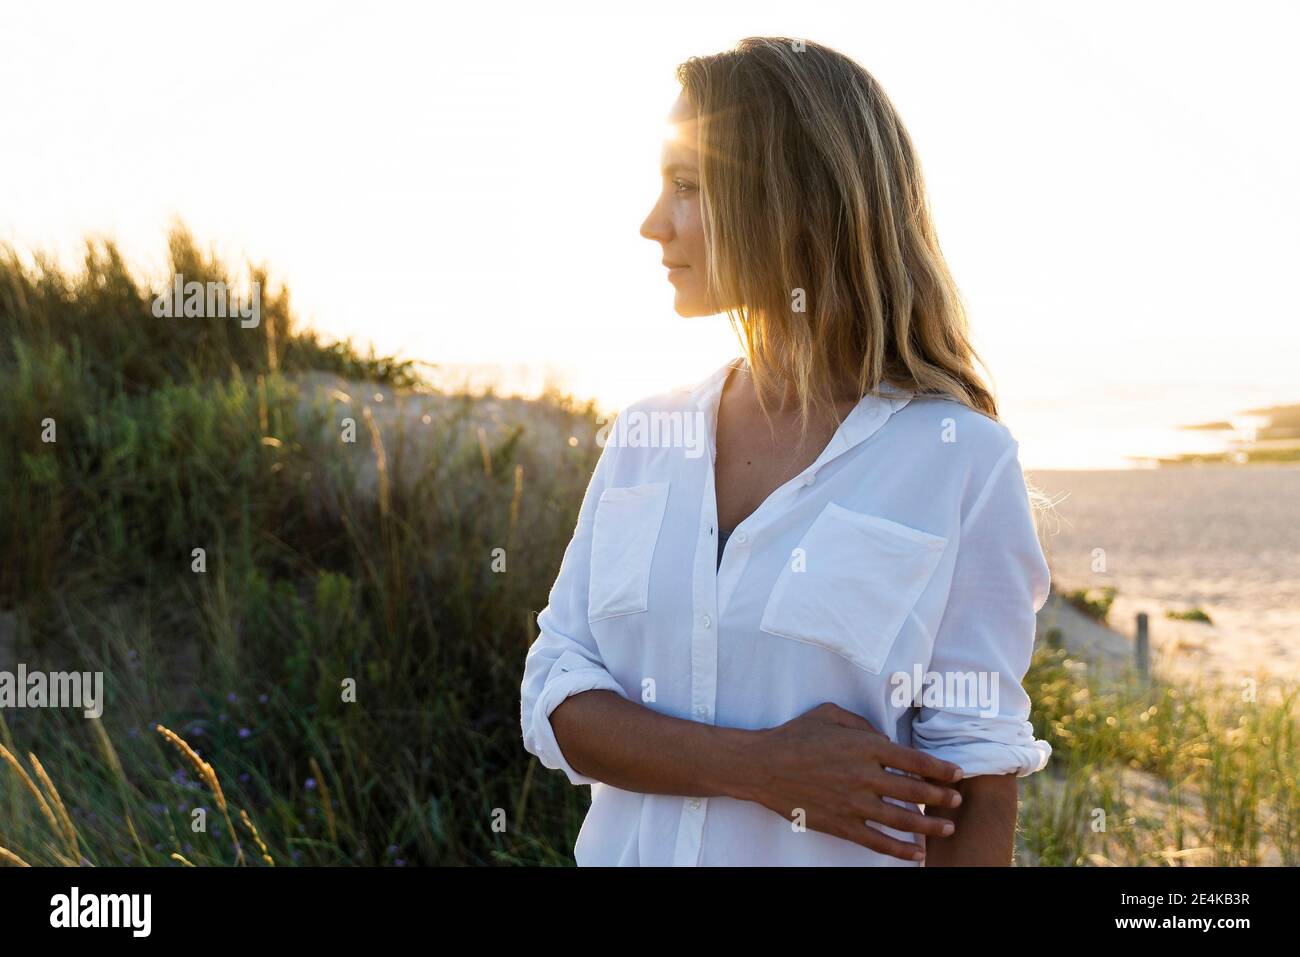 Femme adulte de taille moyenne regardant loin en se tenant près d'une dune de sable Banque D'Images